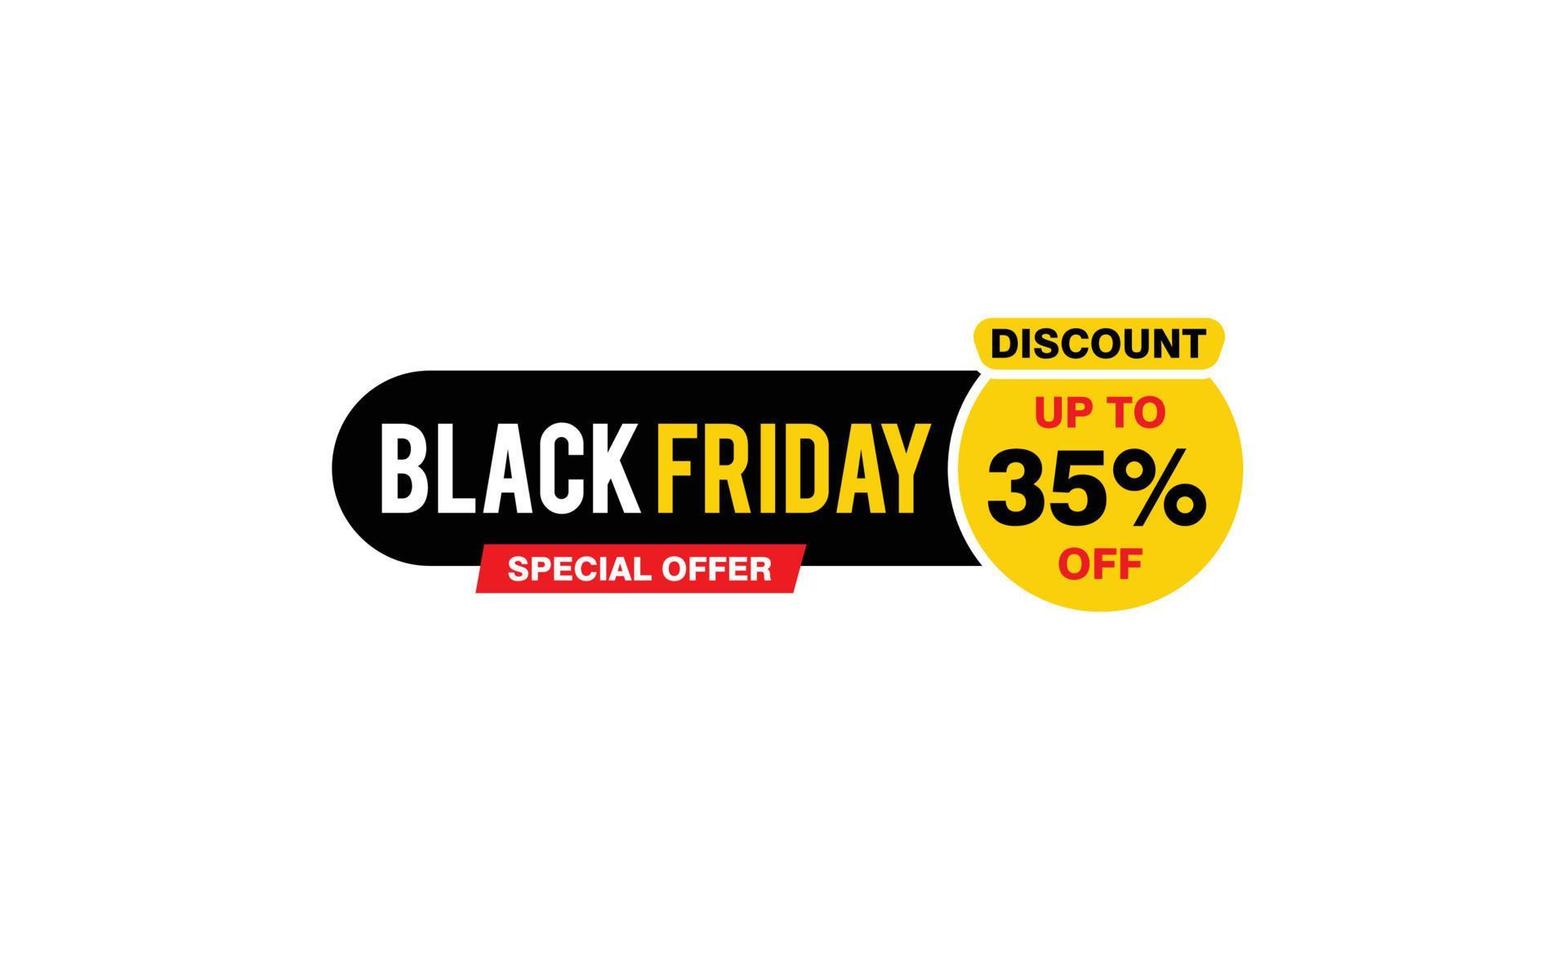 35 Prozent Rabatt Black Friday Angebot, Räumung, Werbebanner-Layout mit Aufkleberstil. vektor